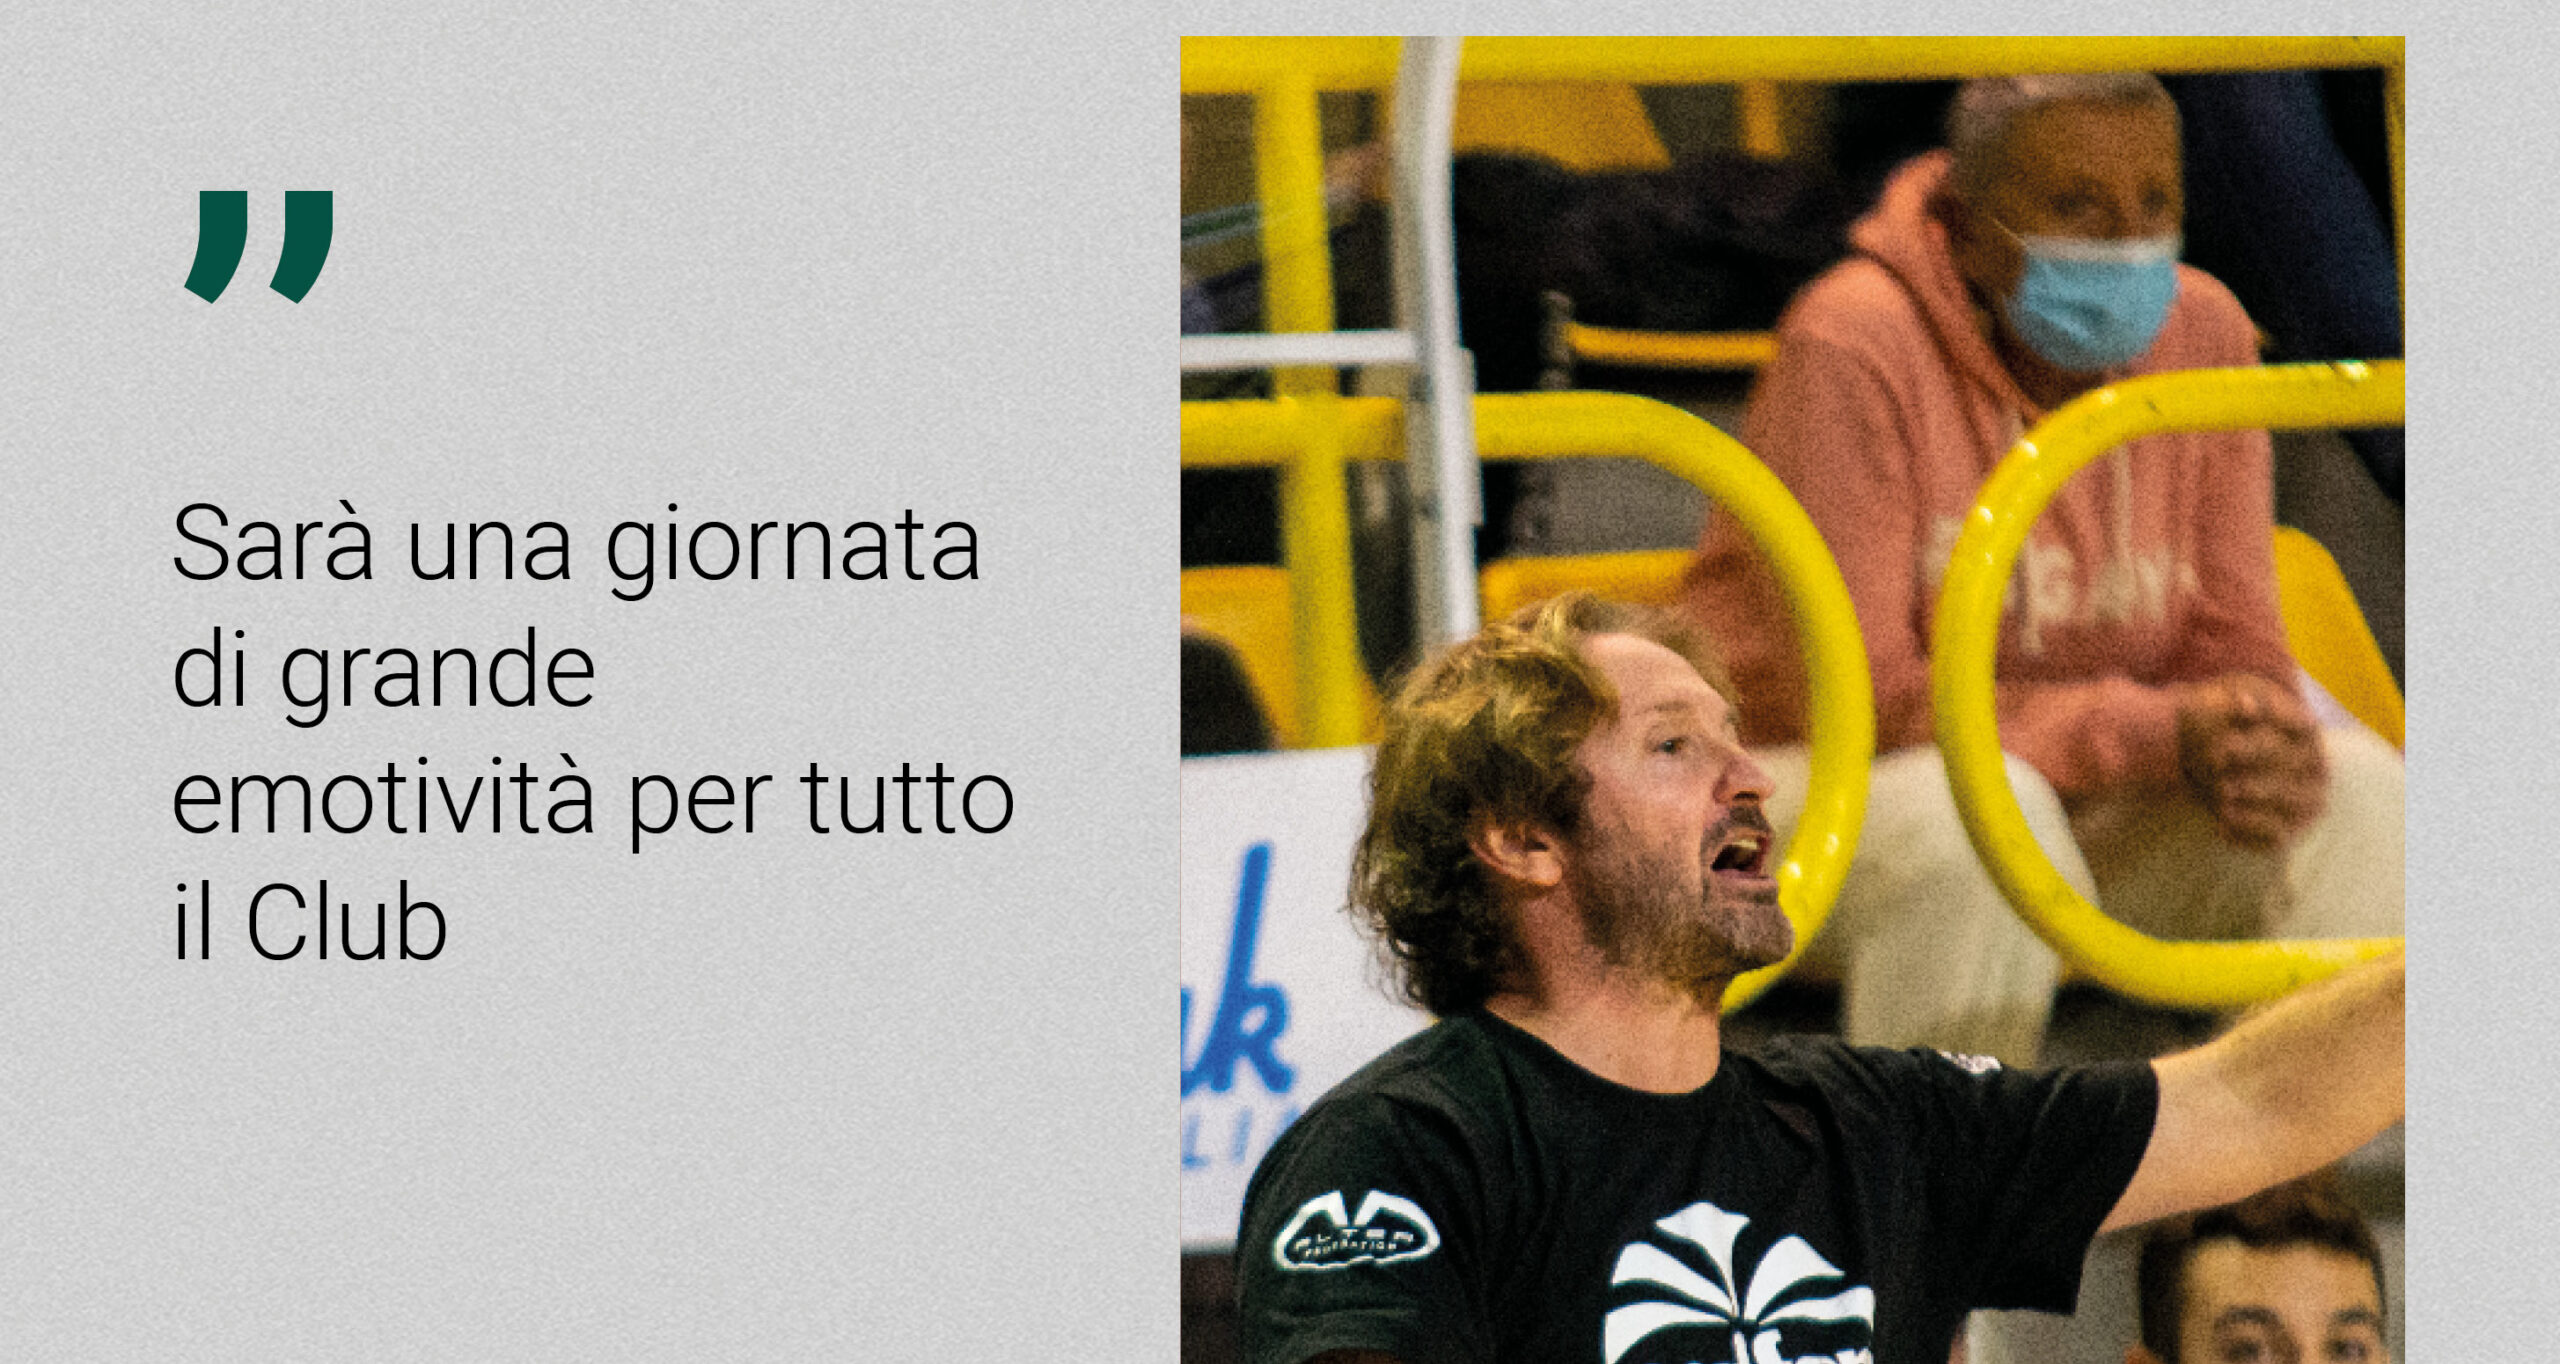 Coach Fioretti prima della sfida con Oleggio: “Sarà una giornata particolare, piena di emotività”